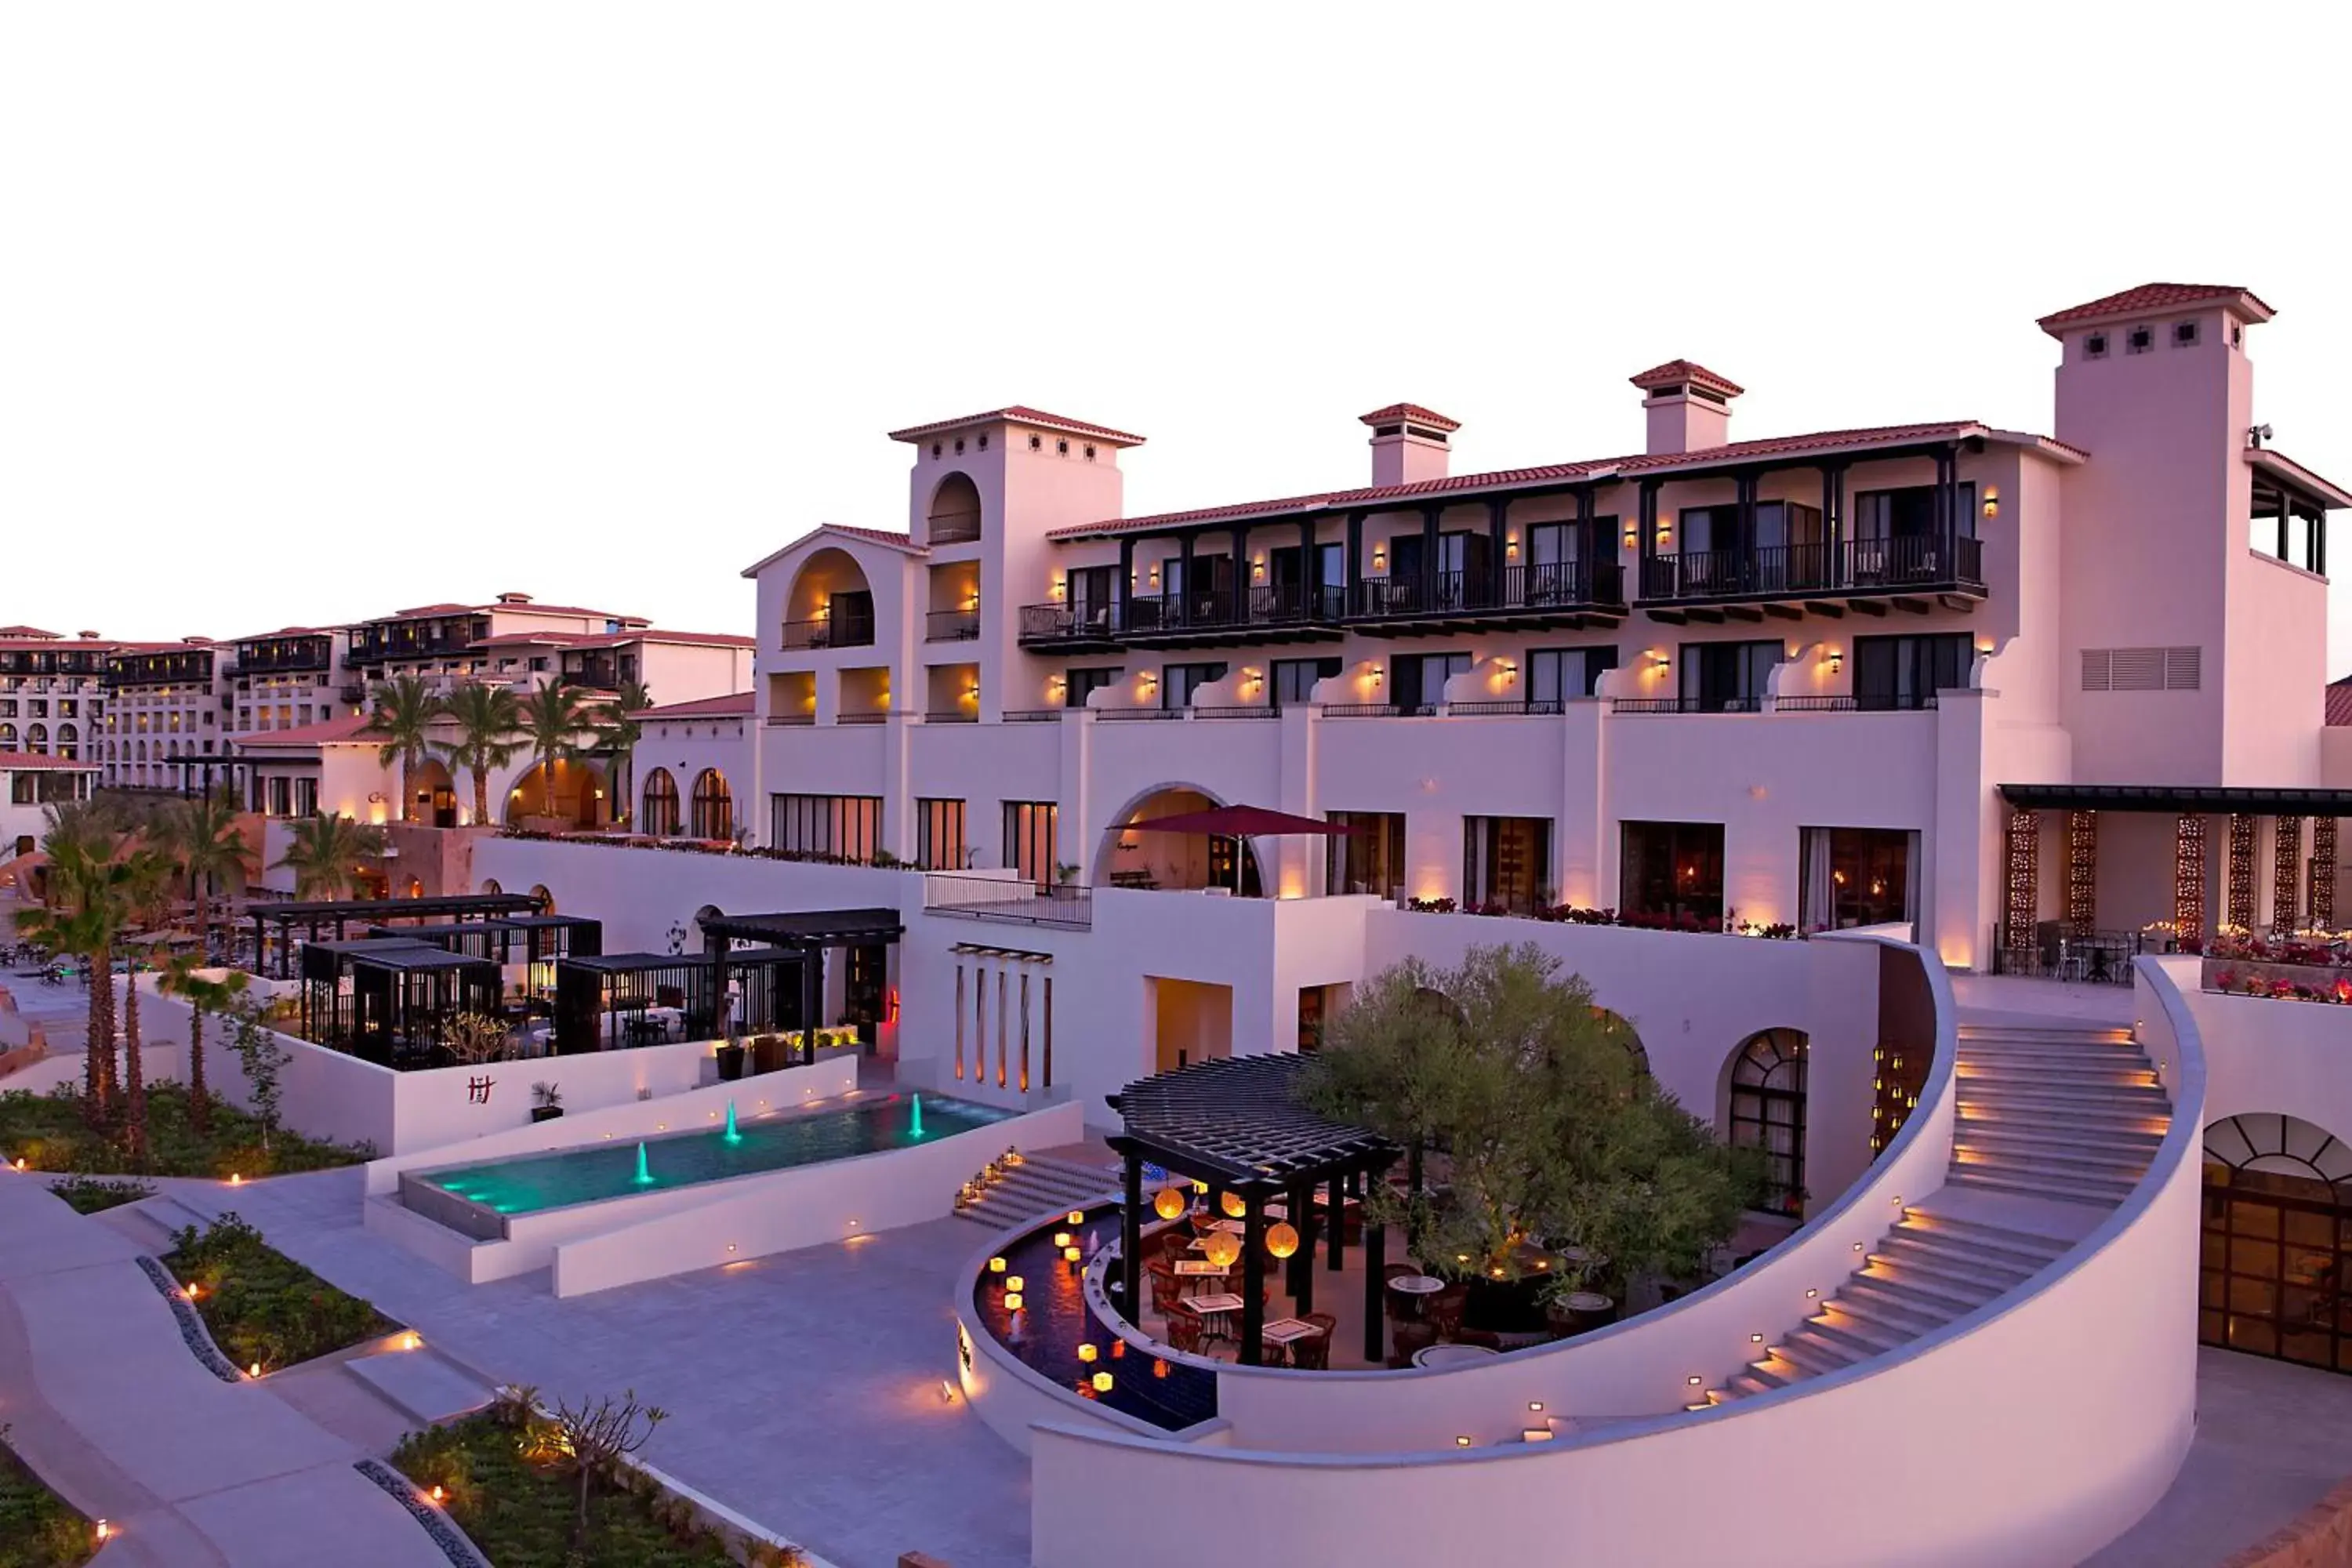 Property building, Pool View in Secrets Puerto Los Cabos Golf & Spa18+